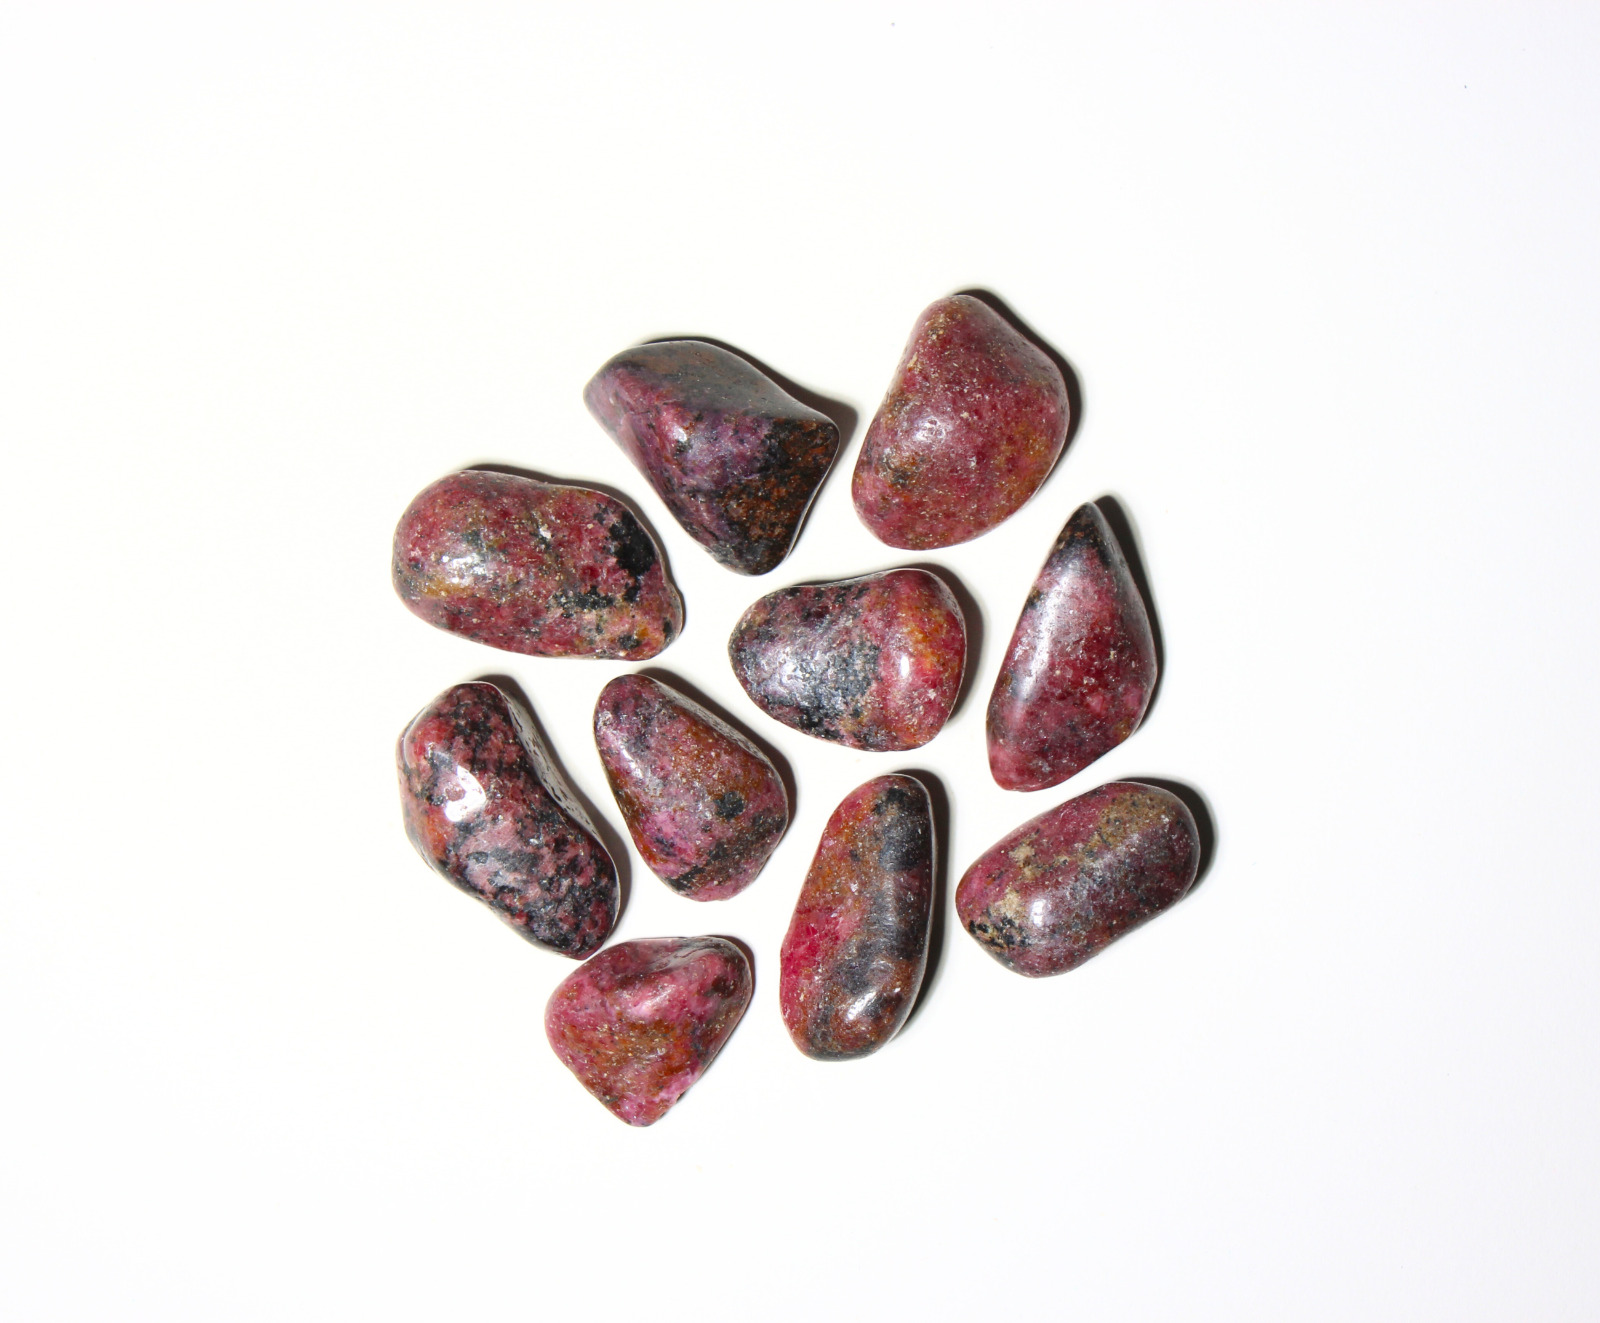 Rhodonite Tumbled Gemstones - Bulk Wholesale Options - 1 LB